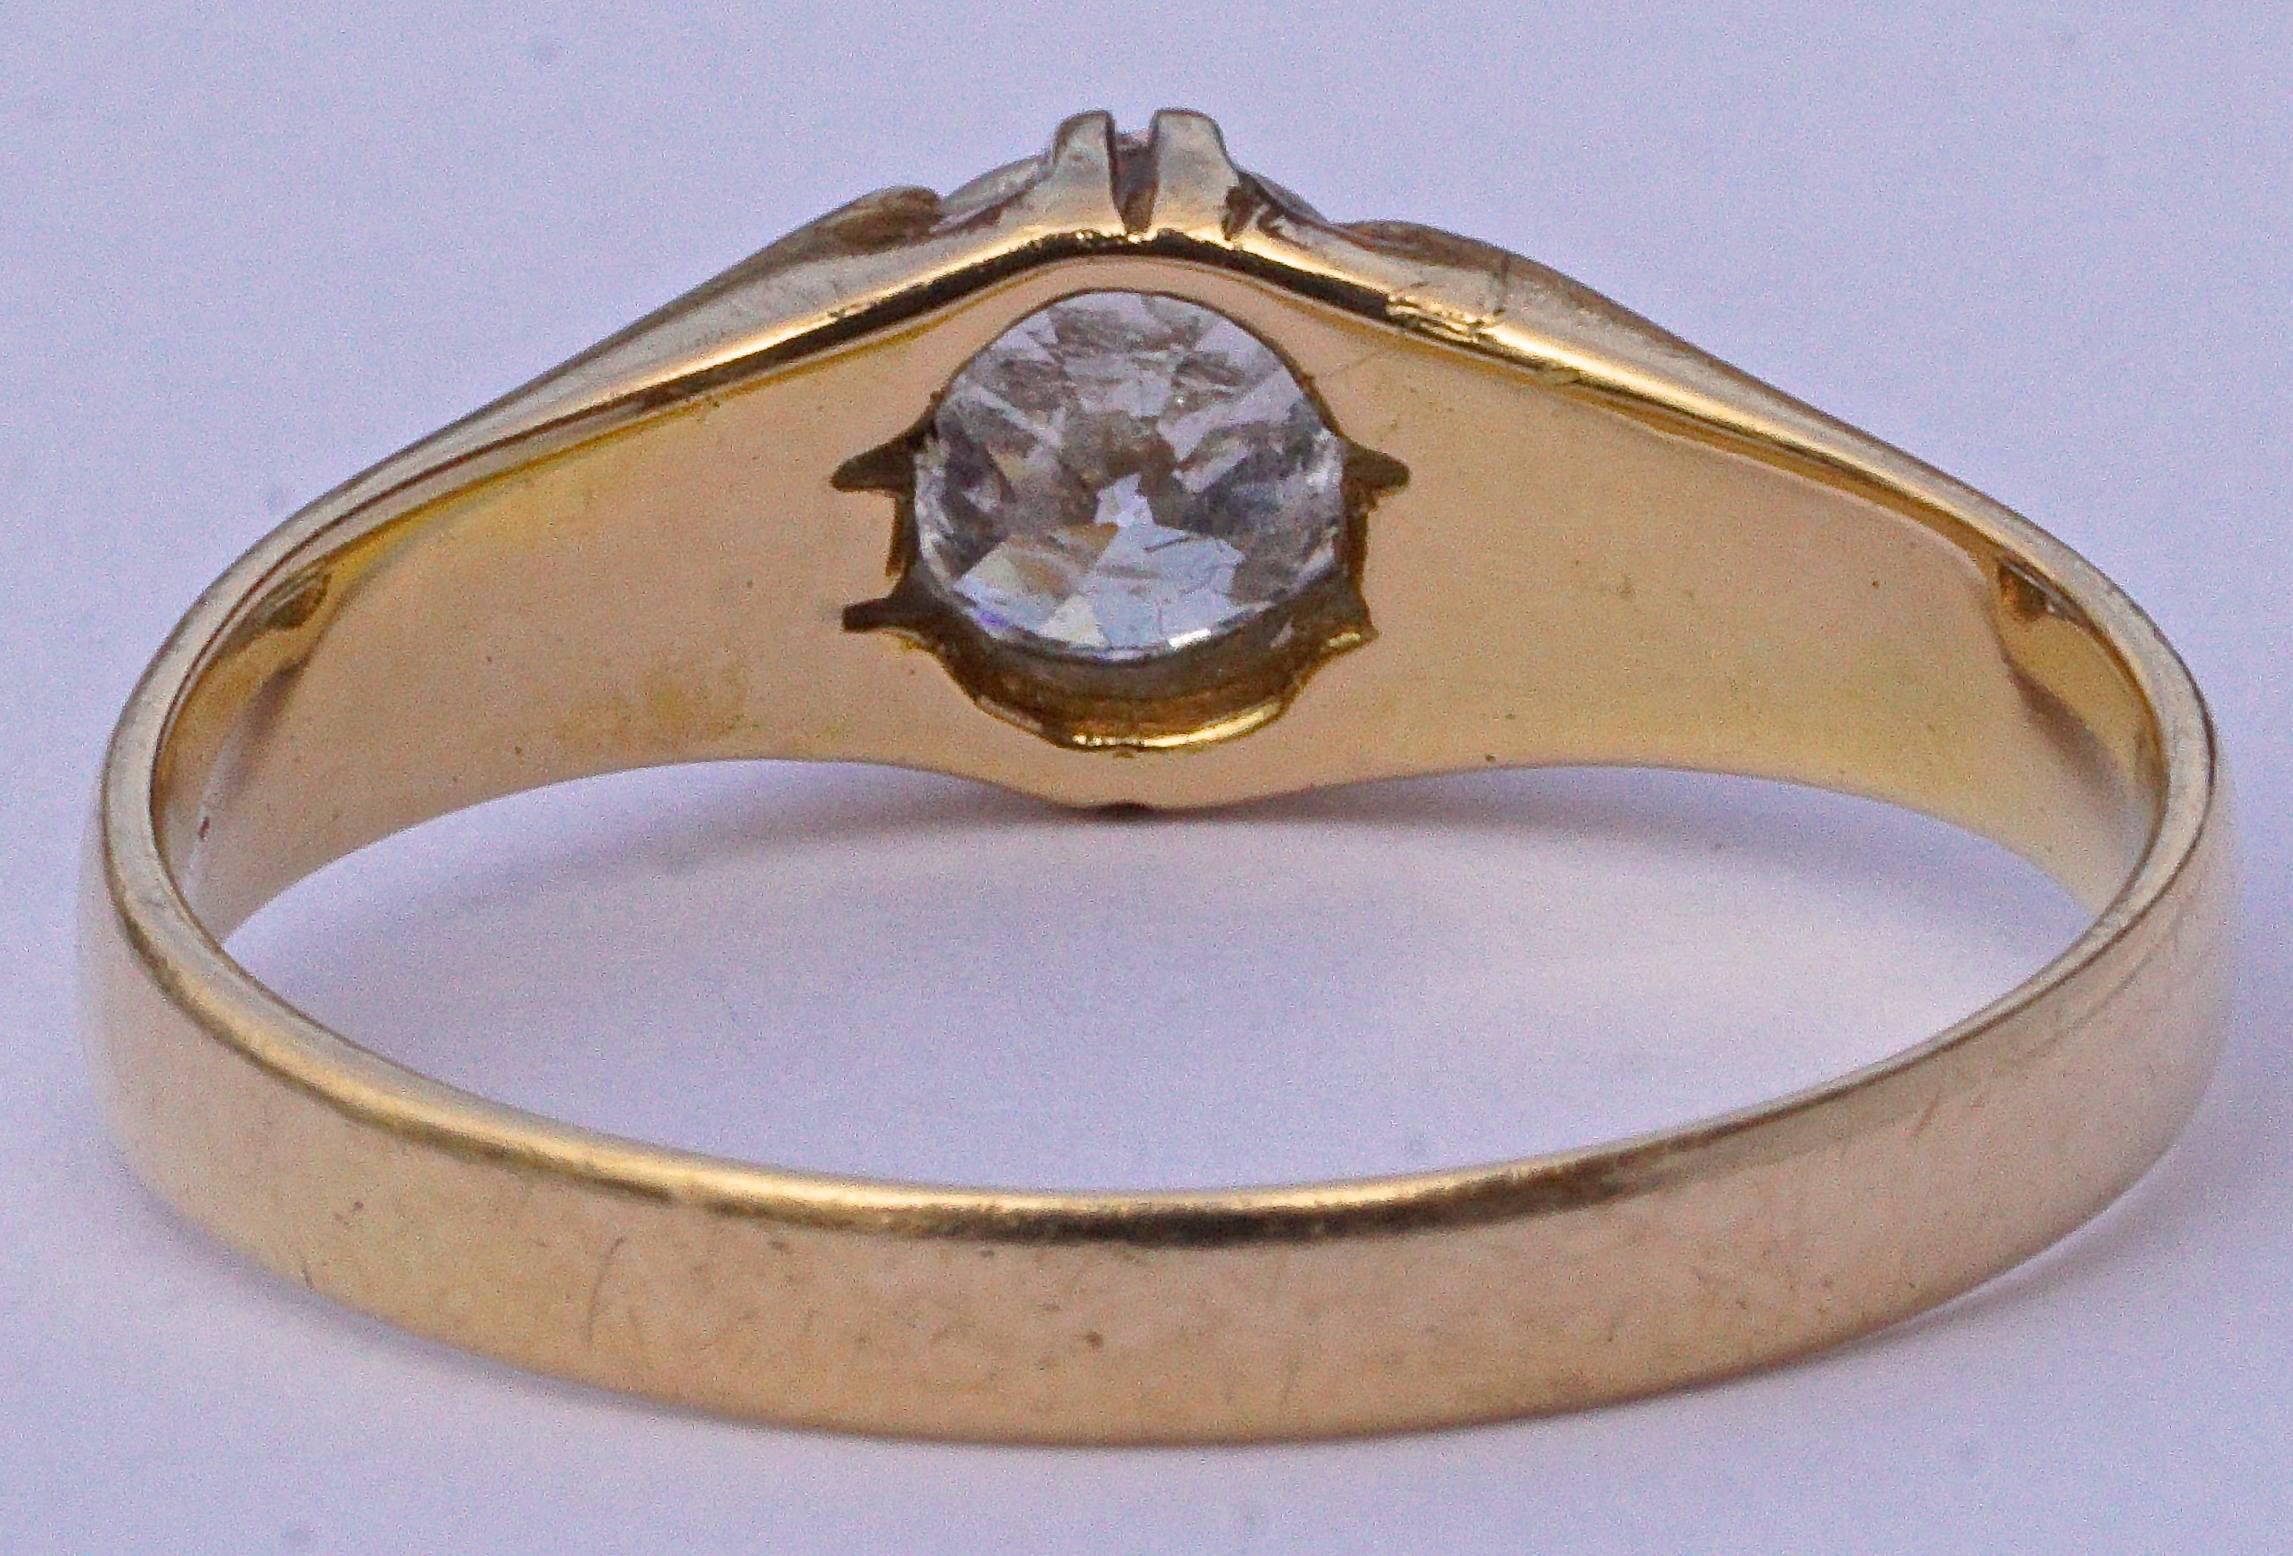 Anillo de oro de 18 ct con un precioso solitario de diamante. Talla de anillo UK Q 1/2 / US 8 1/4, y diámetro interior 1,9 cm / 0,75 pulgadas. La profundidad de engaste es de 3 mm. El diamante de talla antigua es de 0,48 - 0,52 quilates, y la banda